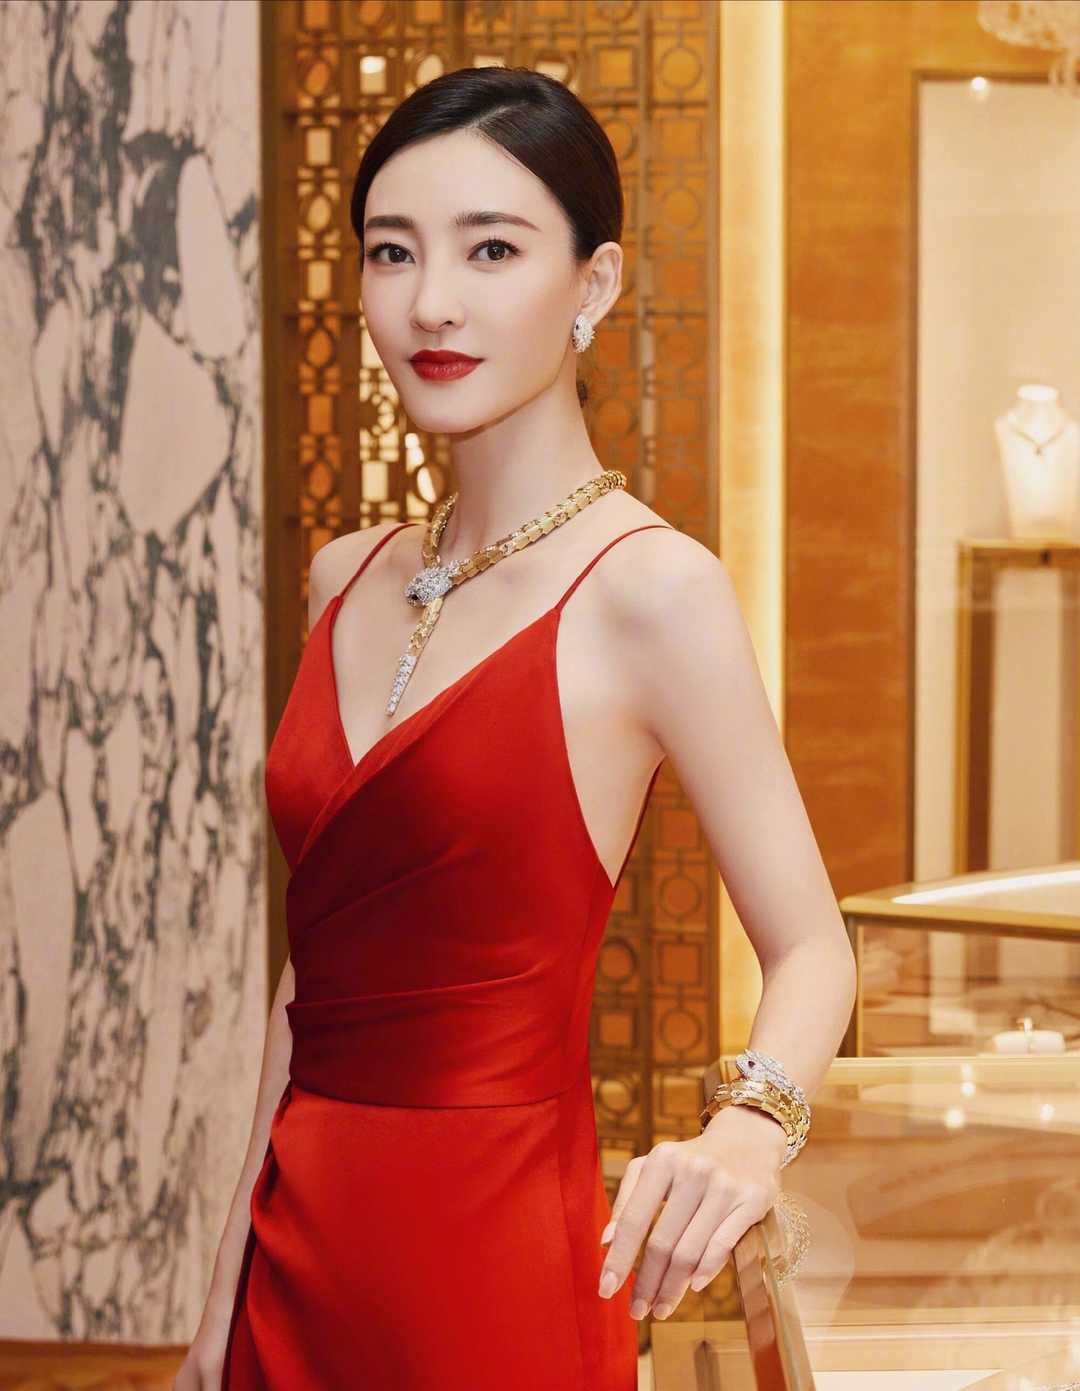 原创王丽坤美得惊艳!穿一袭红色的吊带连衣裙高贵优雅,女人味十足